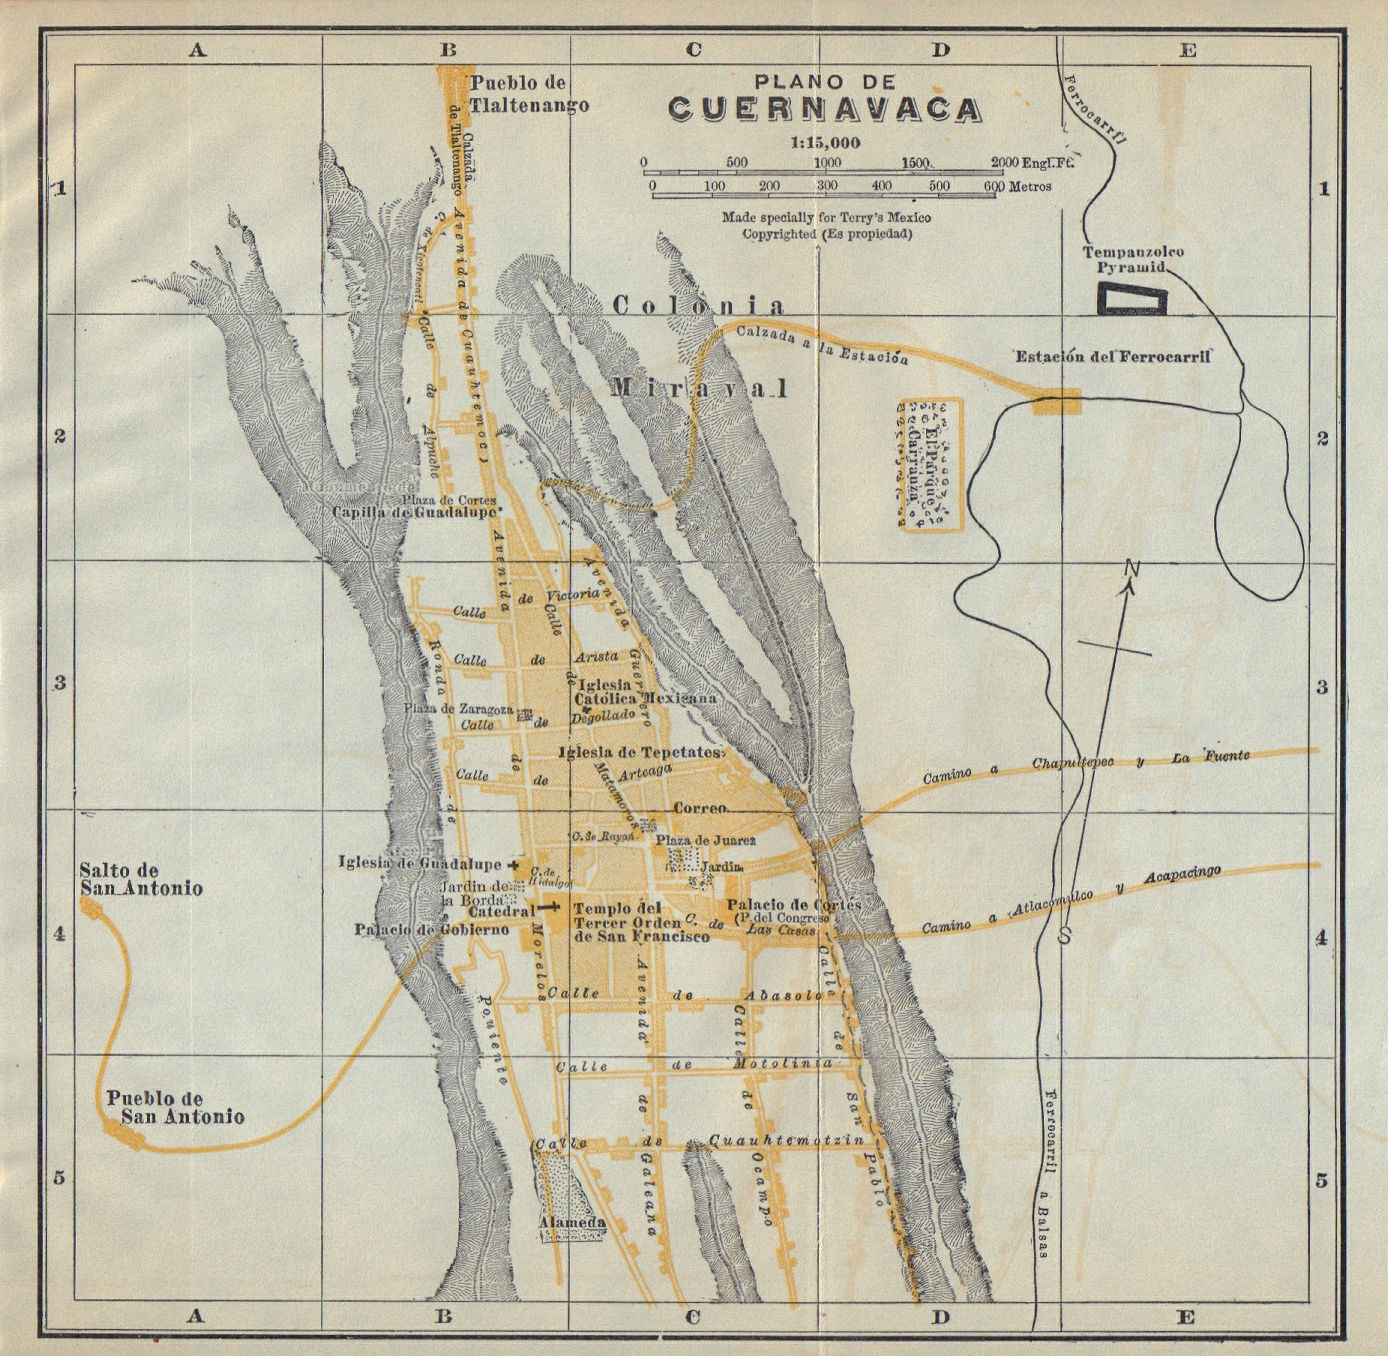 Associate Product Plano de CUERNAVACA, Mexico. Mapa de la ciudad. City/town plan 1938 old